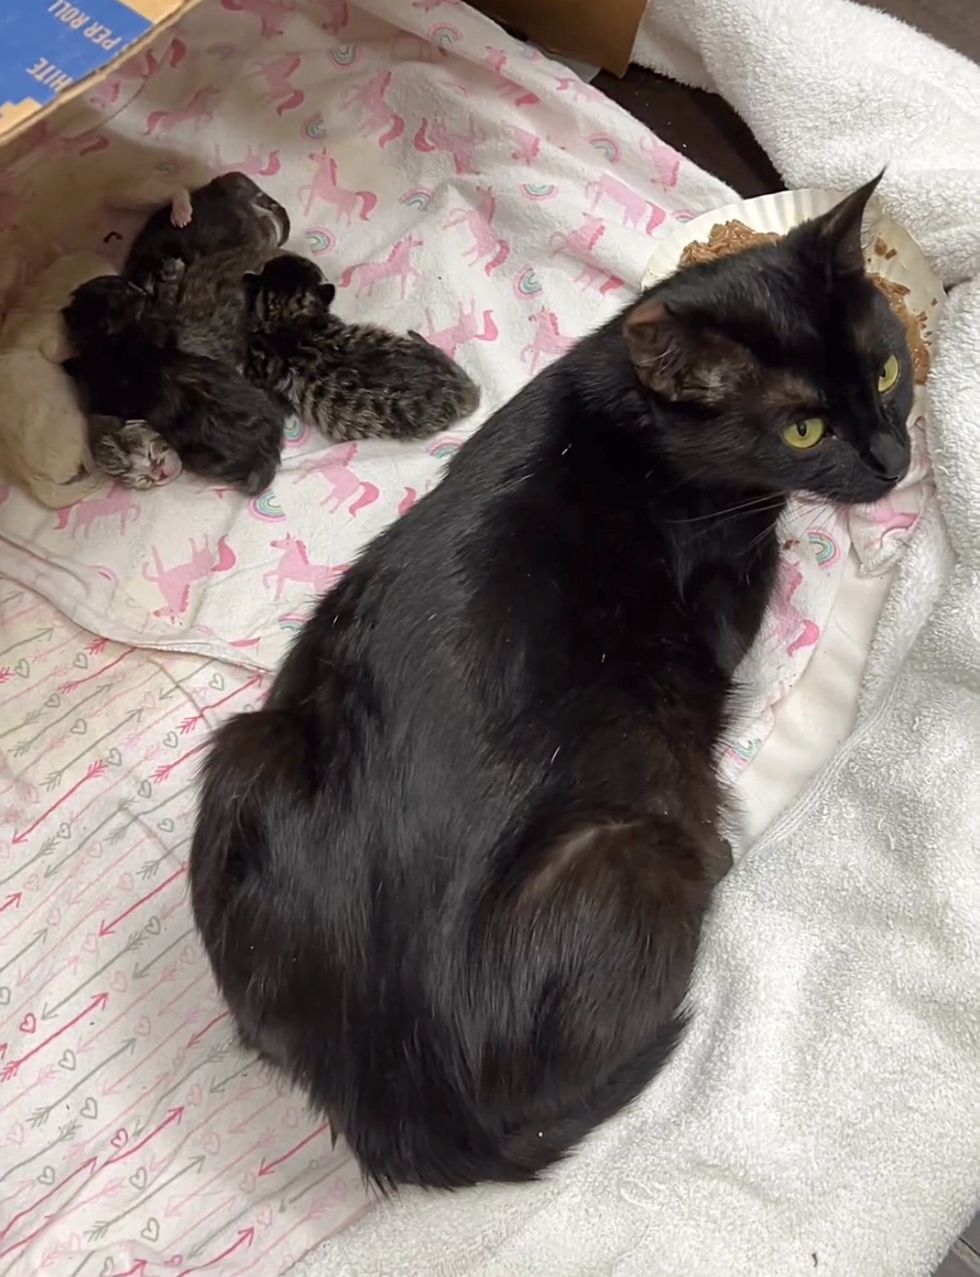 kittens sleeping cat mom